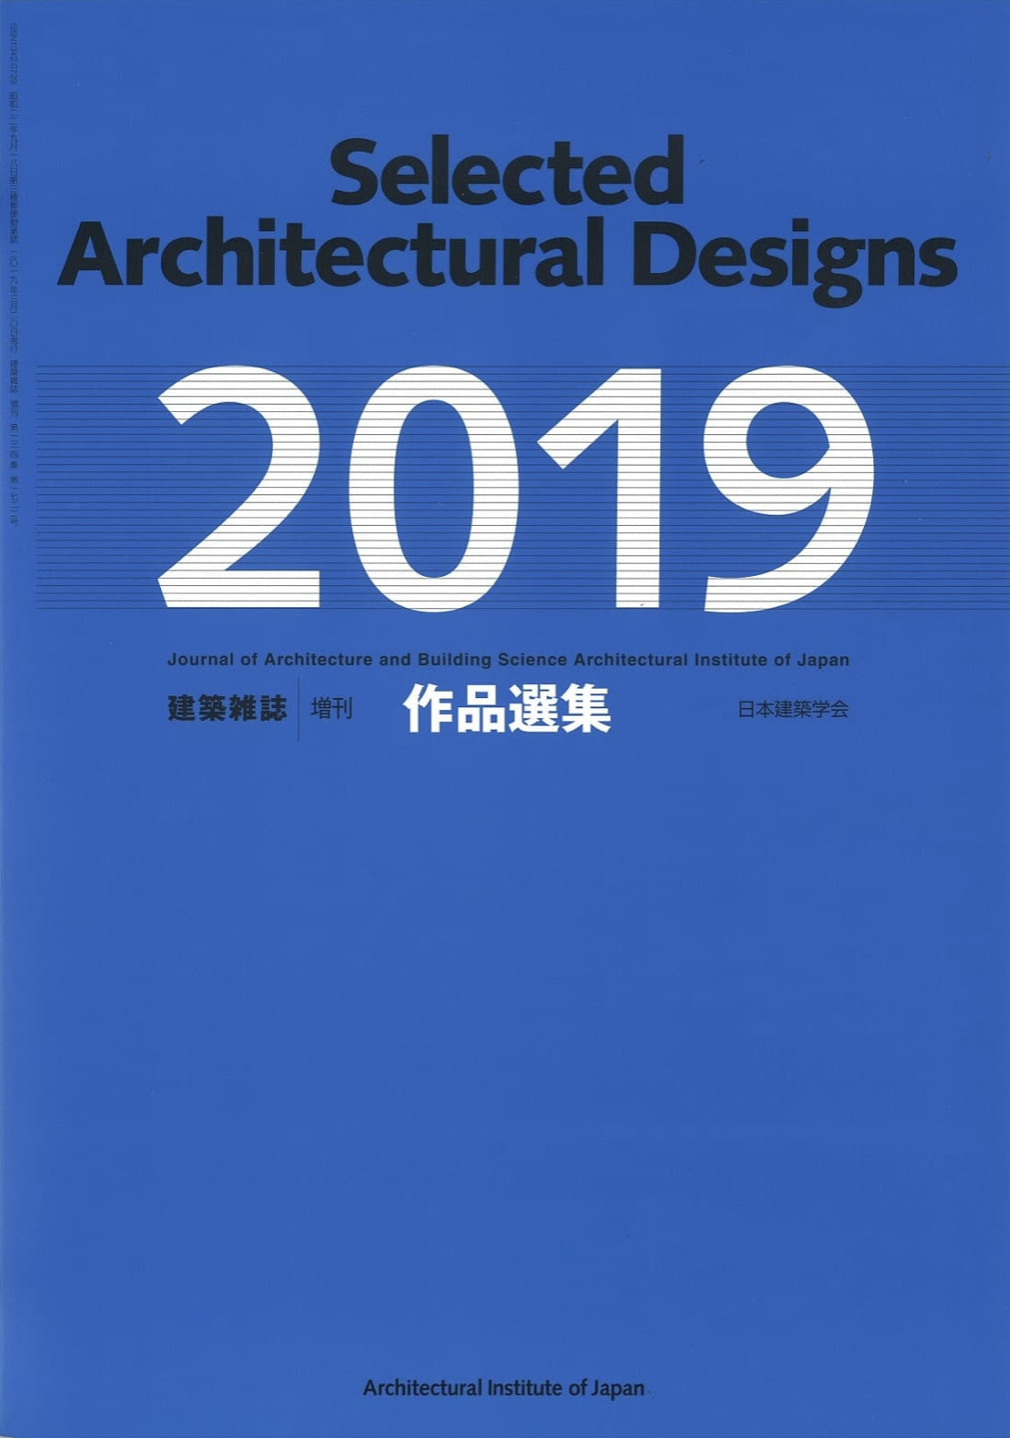 日本建築学会作品選集2019に“Four Funeral Houses”が掲載されました